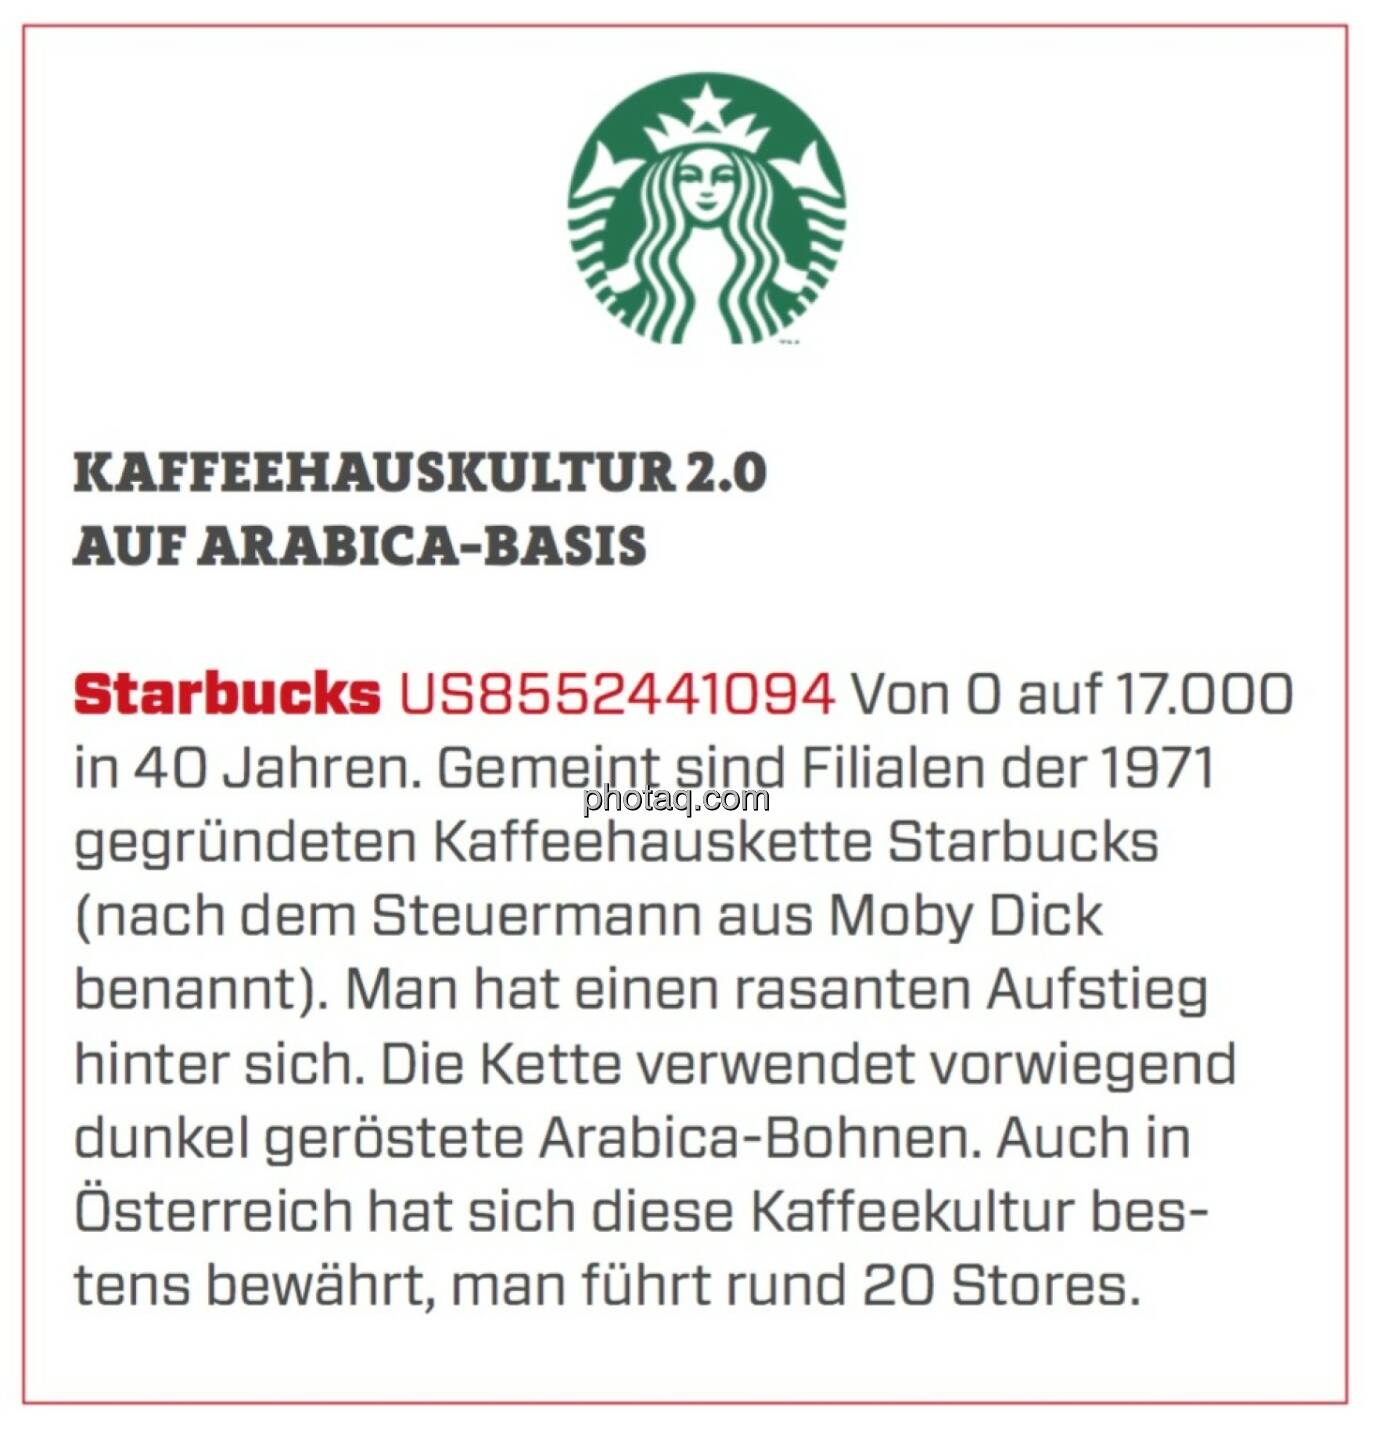 Starbucks - Kaffeehauskultur 2.0 auf Arabica-Basis: Von 0 auf 17.000 in 40 Jahren. Gemeint sind Filialen der 1971 gegründeten Kaffeehauskette Starbucks (nach dem Steuermann aus Moby Dick benannt). Man hat einen rasanten Aufstieg hinter sich. Die Kette verwendet vorwiegend dunkel geröstete Arabica-Bohnen. Auch in Österreich hat sich diese Kaffeekultur bestens bewährt, man führt rund 20 Stores.